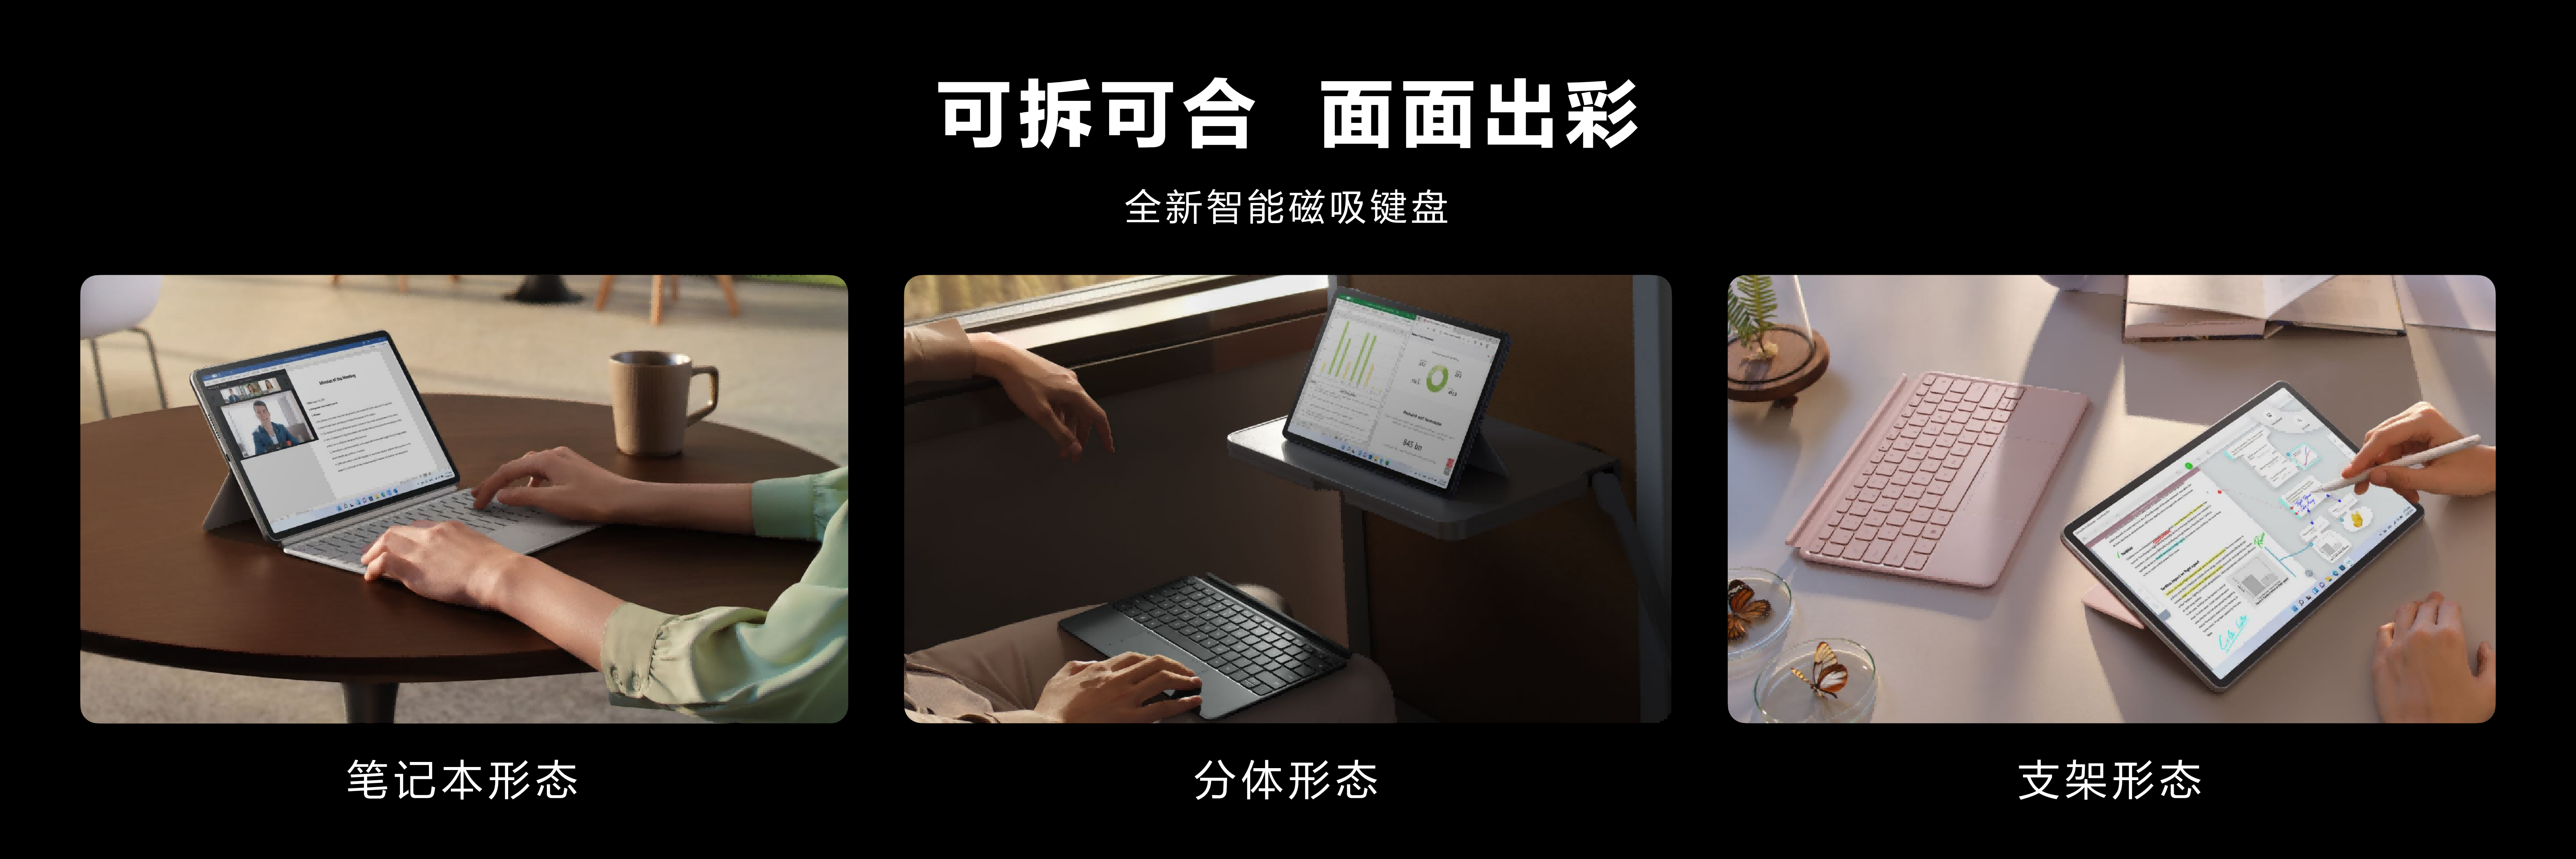 移动办公人群优选二合一笔记本 华为MateBook E Go二合一笔记本多彩上市